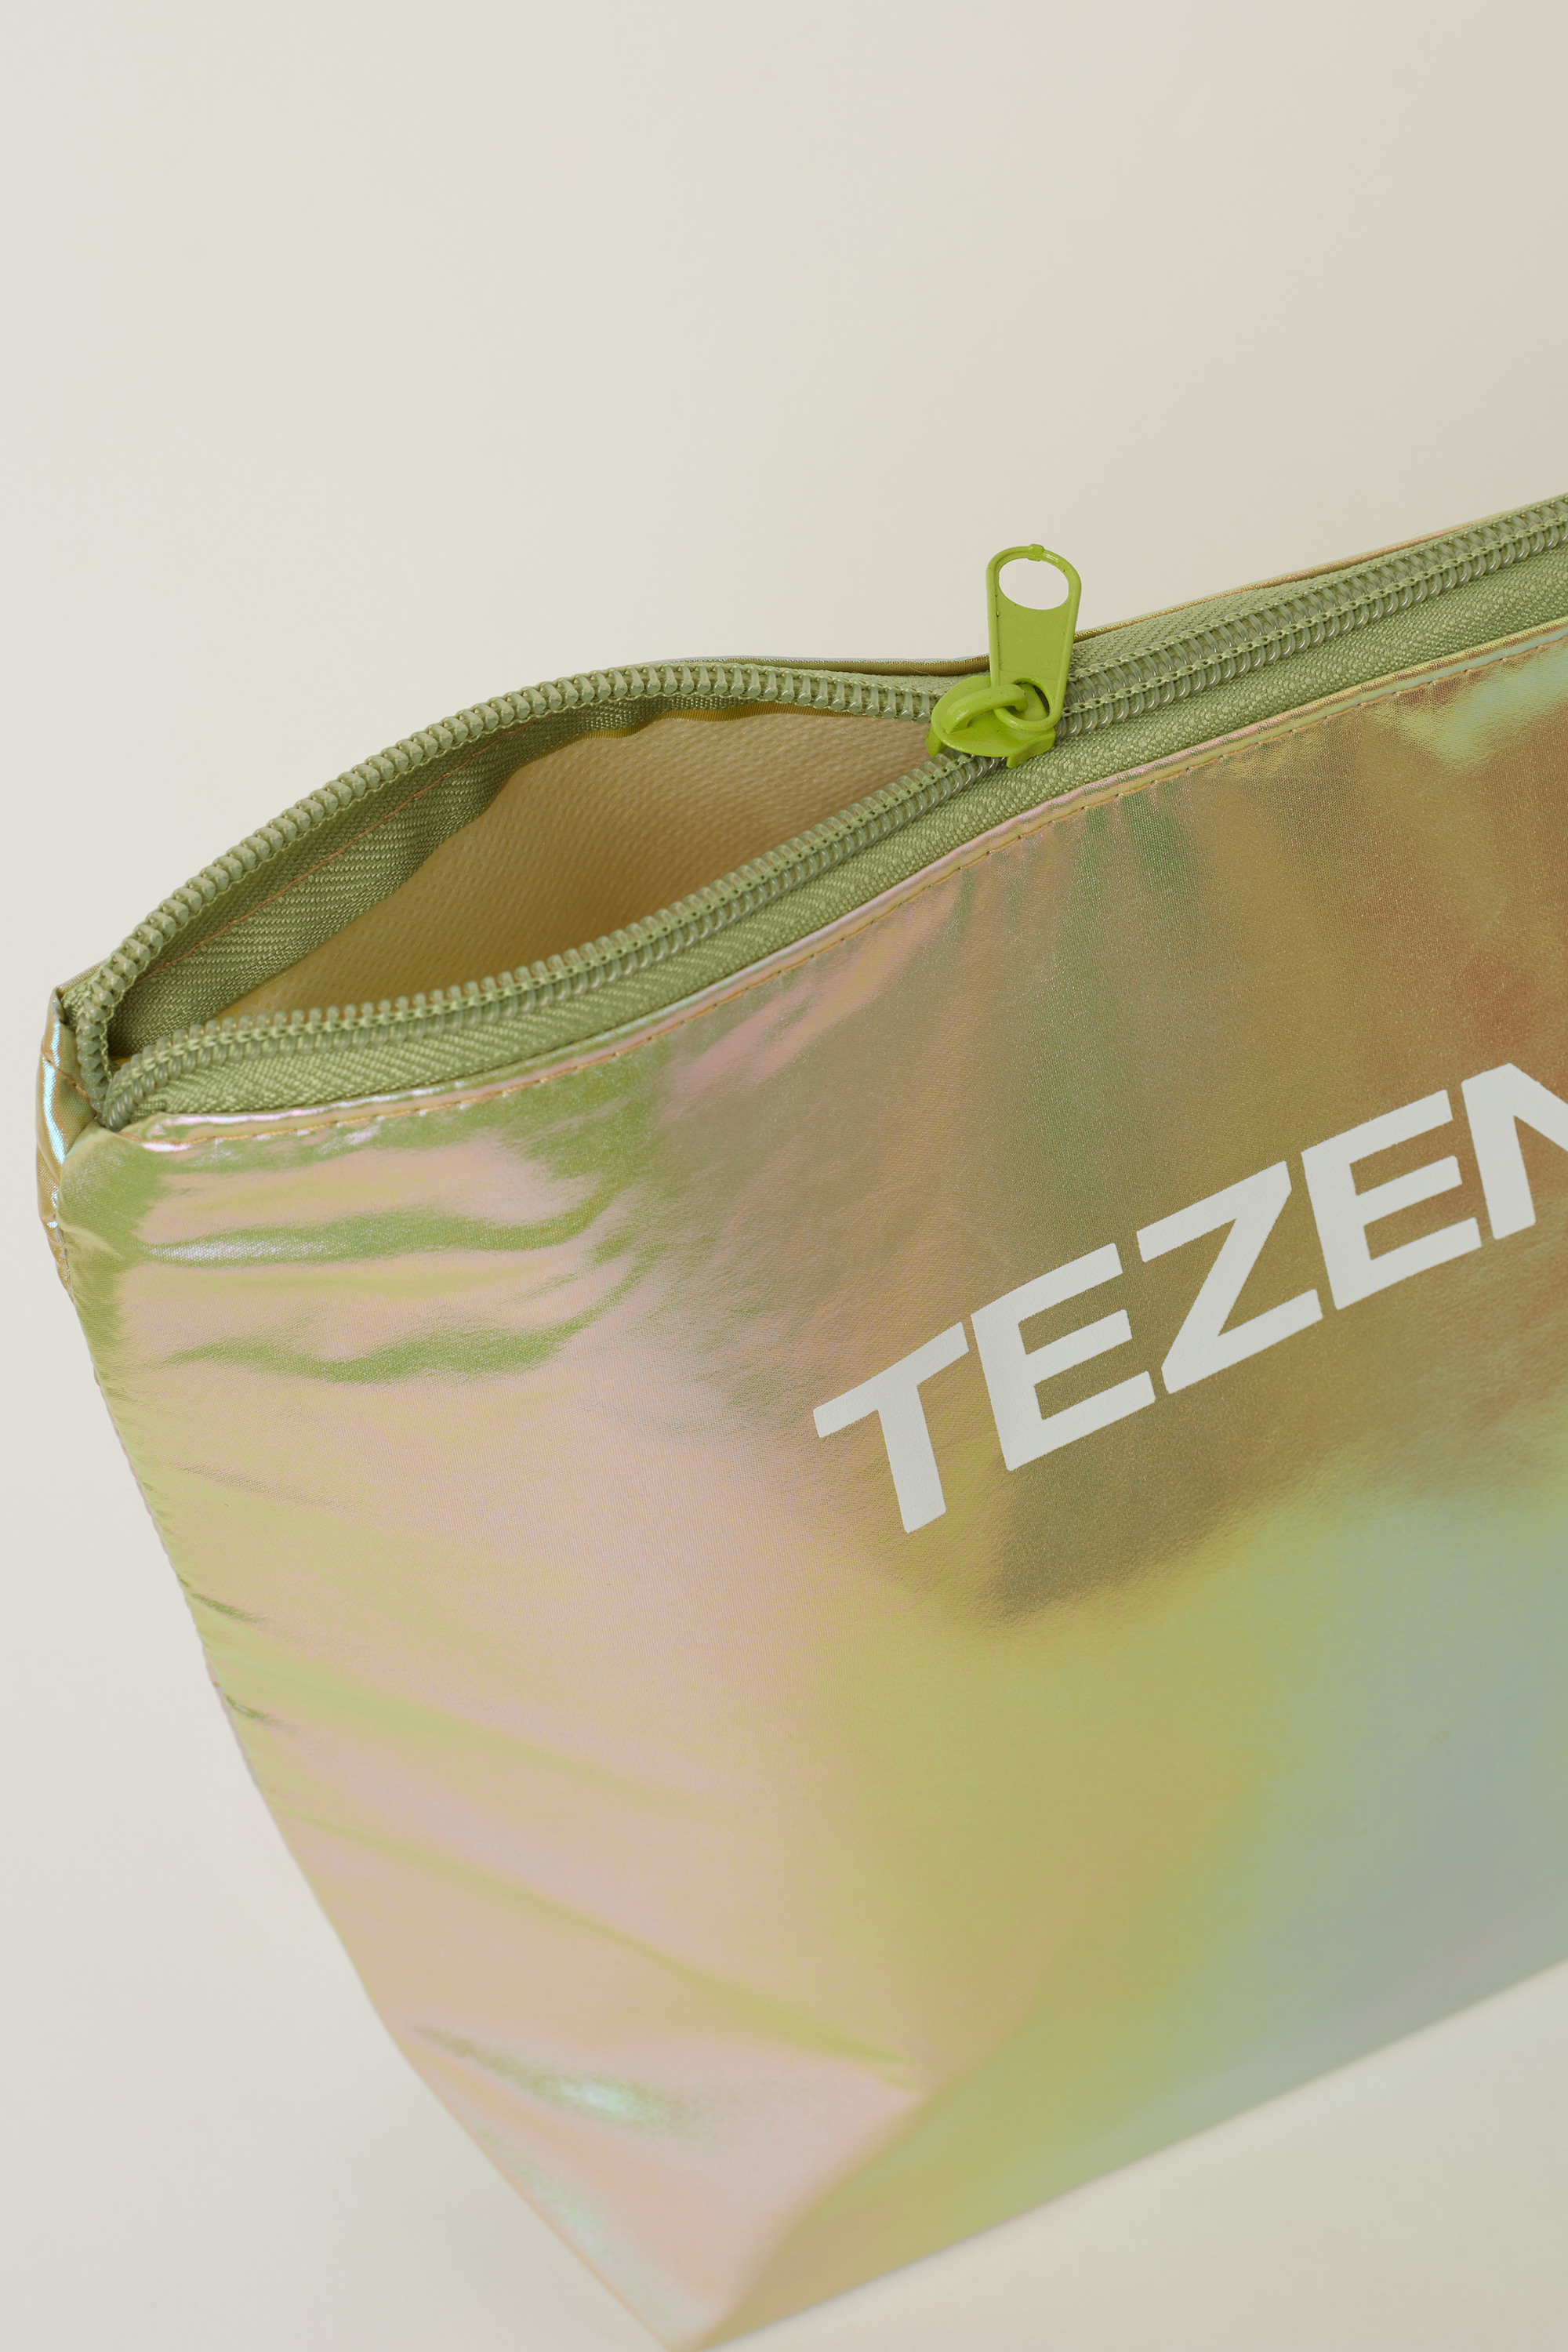 Tσάντα θαλάσσης με Zip από Ανακυκλωμένο Πλαστικό